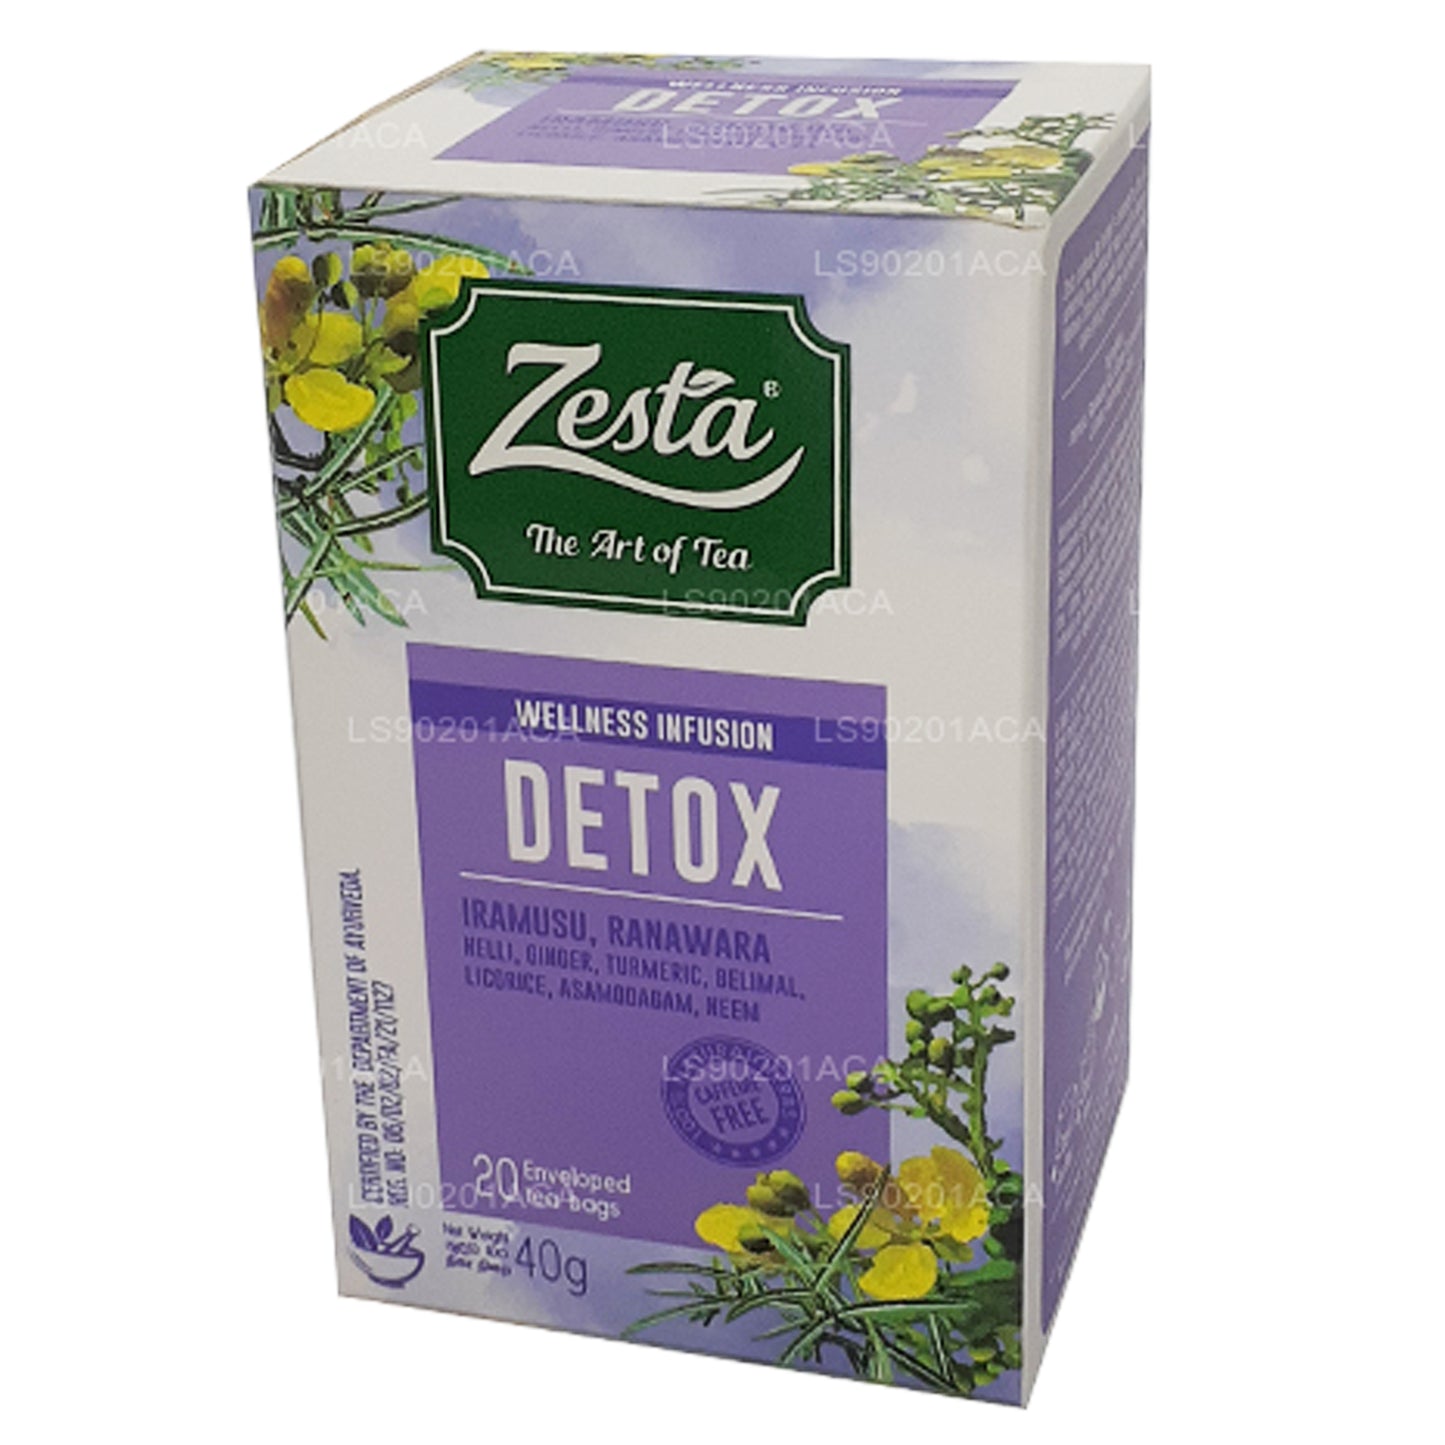 Zesta Detox Iramusu, Ranawara (40g) 20 Tea Bags